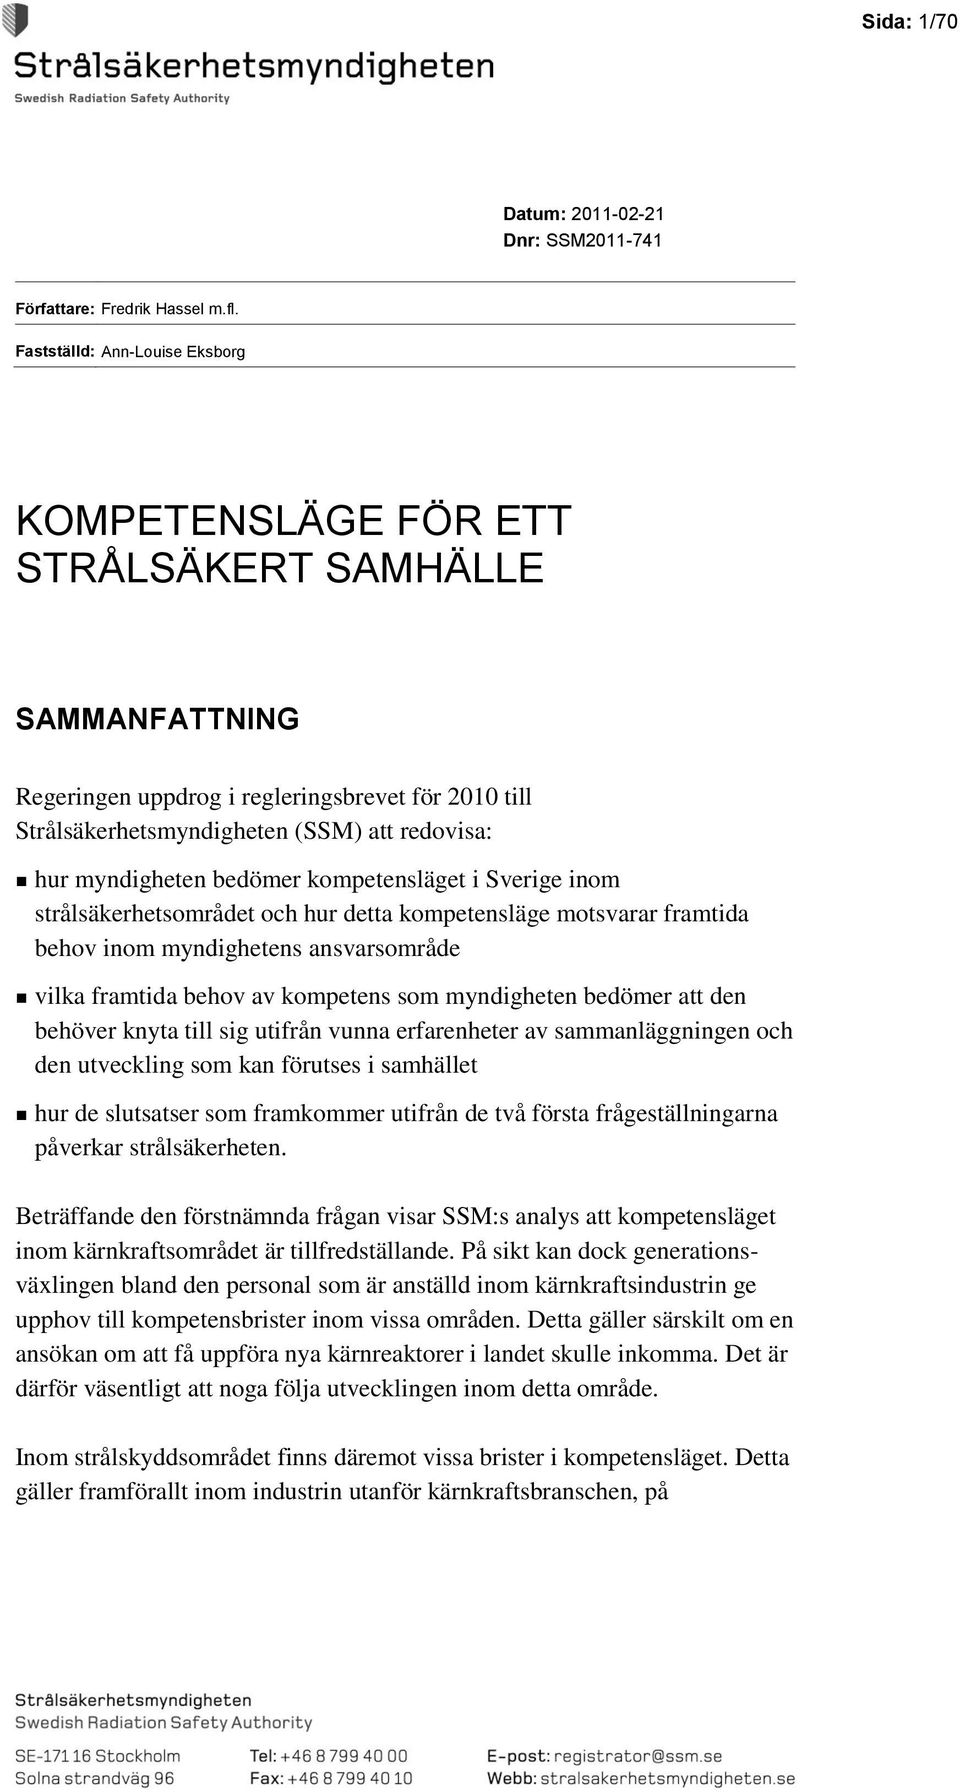 myndigheten bedömer kompetensläget i Sverige inom strålsäkerhetsområdet och hur detta kompetensläge motsvarar framtida behov inom myndighetens ansvarsområde vilka framtida behov av kompetens som